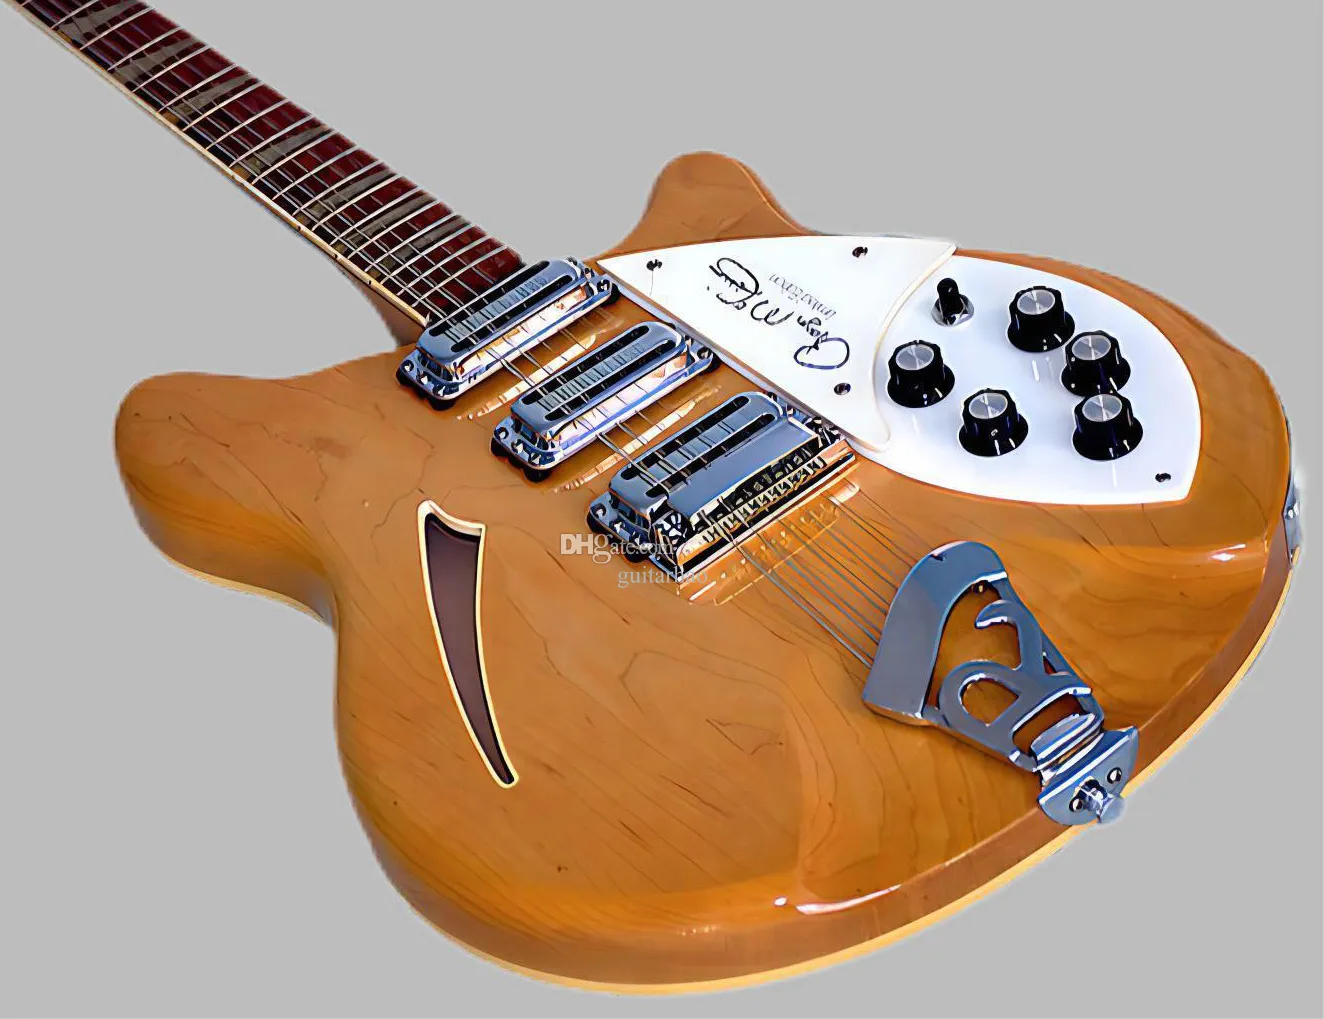 Roger mcguinn 370 Tablero de 12 cuerdas glo natural guitarra eléctrica semihueca diapasón pintado brillante, 3 pastillas, triángulo incrustado